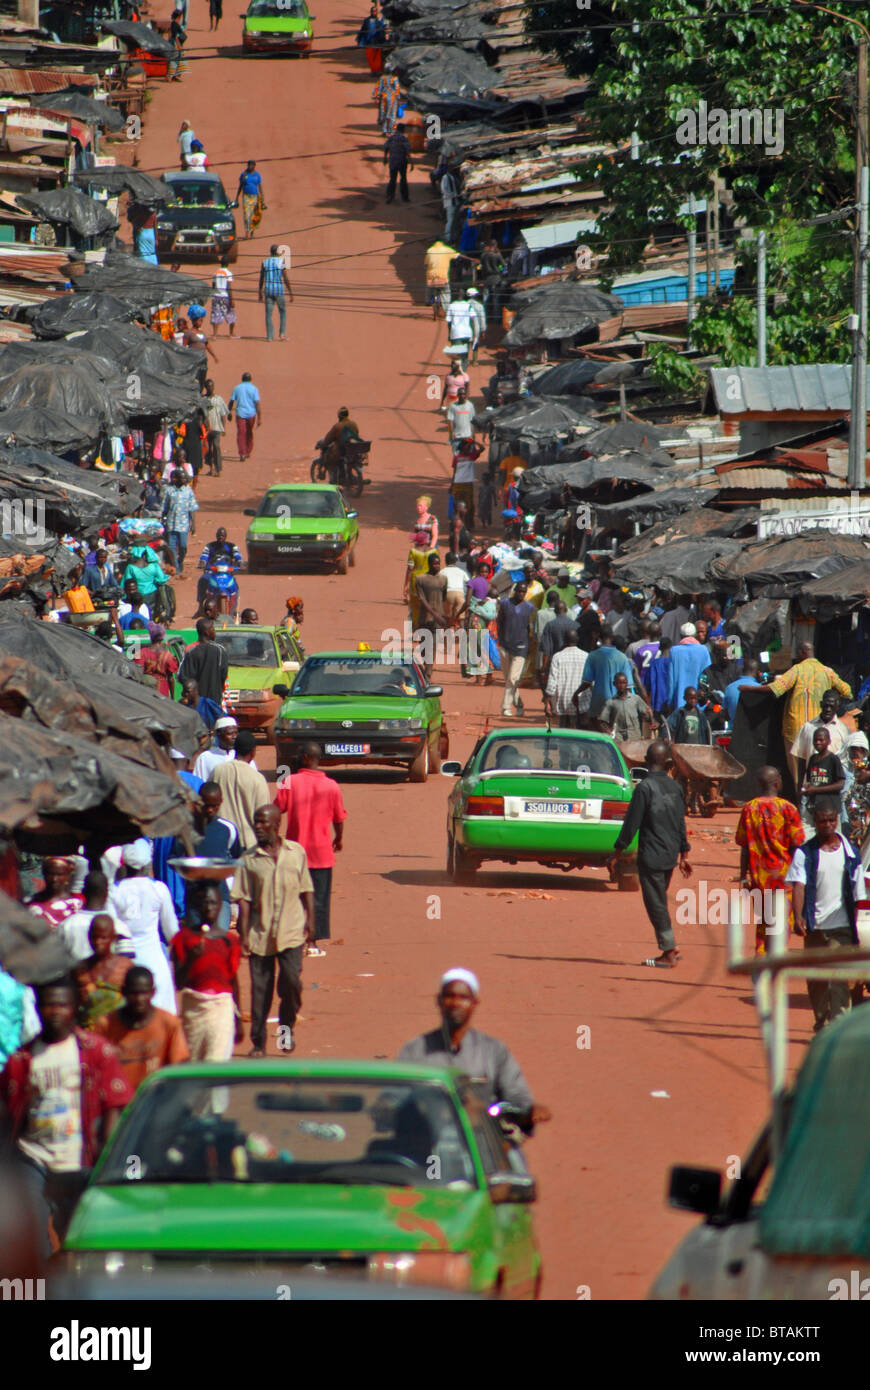 Rosso su strada sterrata e verde taxi nella città dell'uomo, Costa d Avorio, Africa occidentale Foto Stock